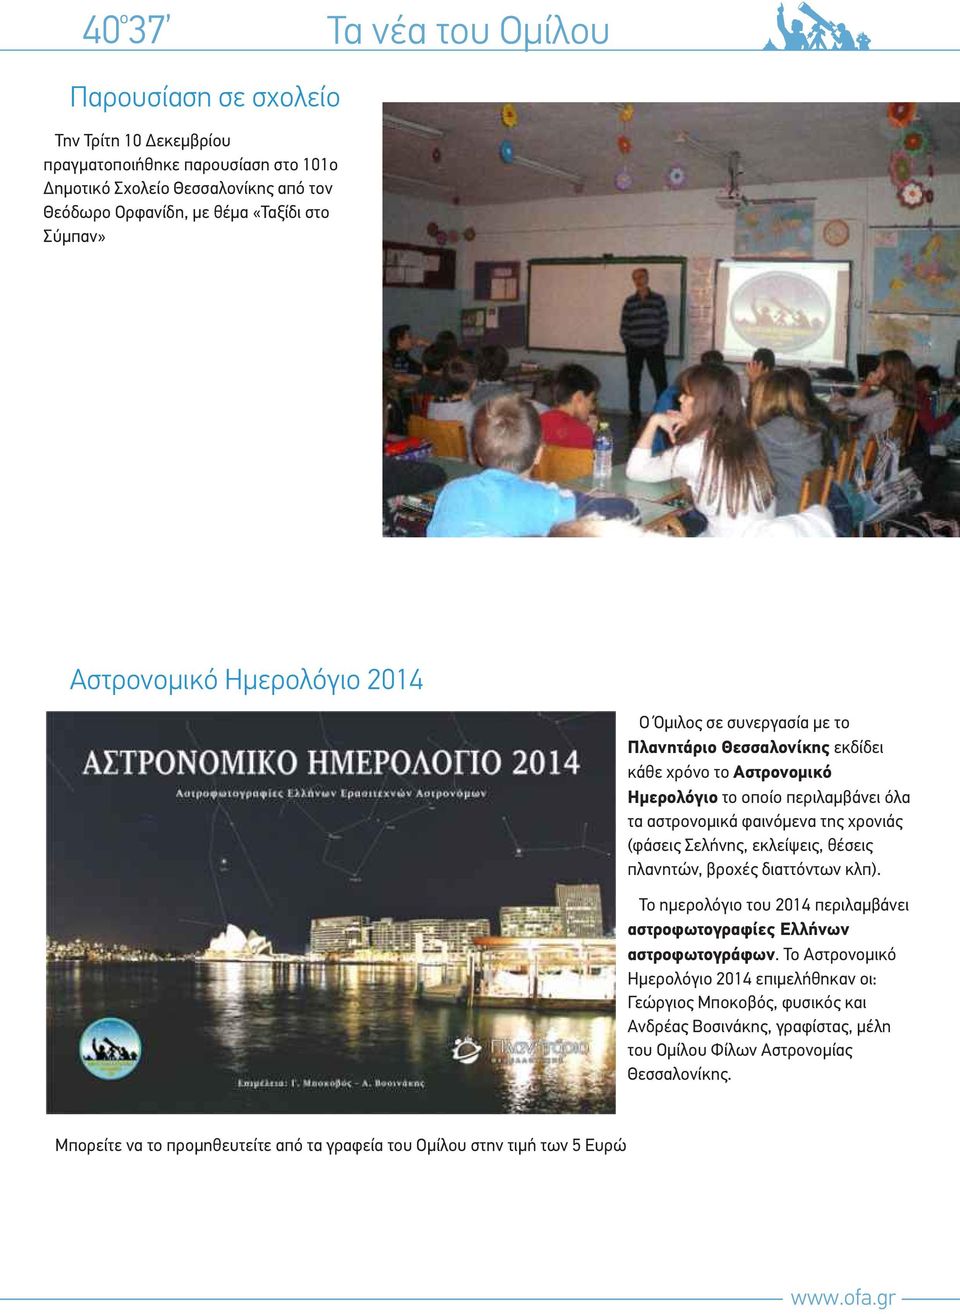 (φάσεις Σελήνης, εκλείψεις, θέσεις πλανητών, βροχές διαττόντων κλπ). Το ημερολόγιο του 2014 περιλαμβάνει αστροφωτογραφίες Ελλήνων αστροφωτογράφων.